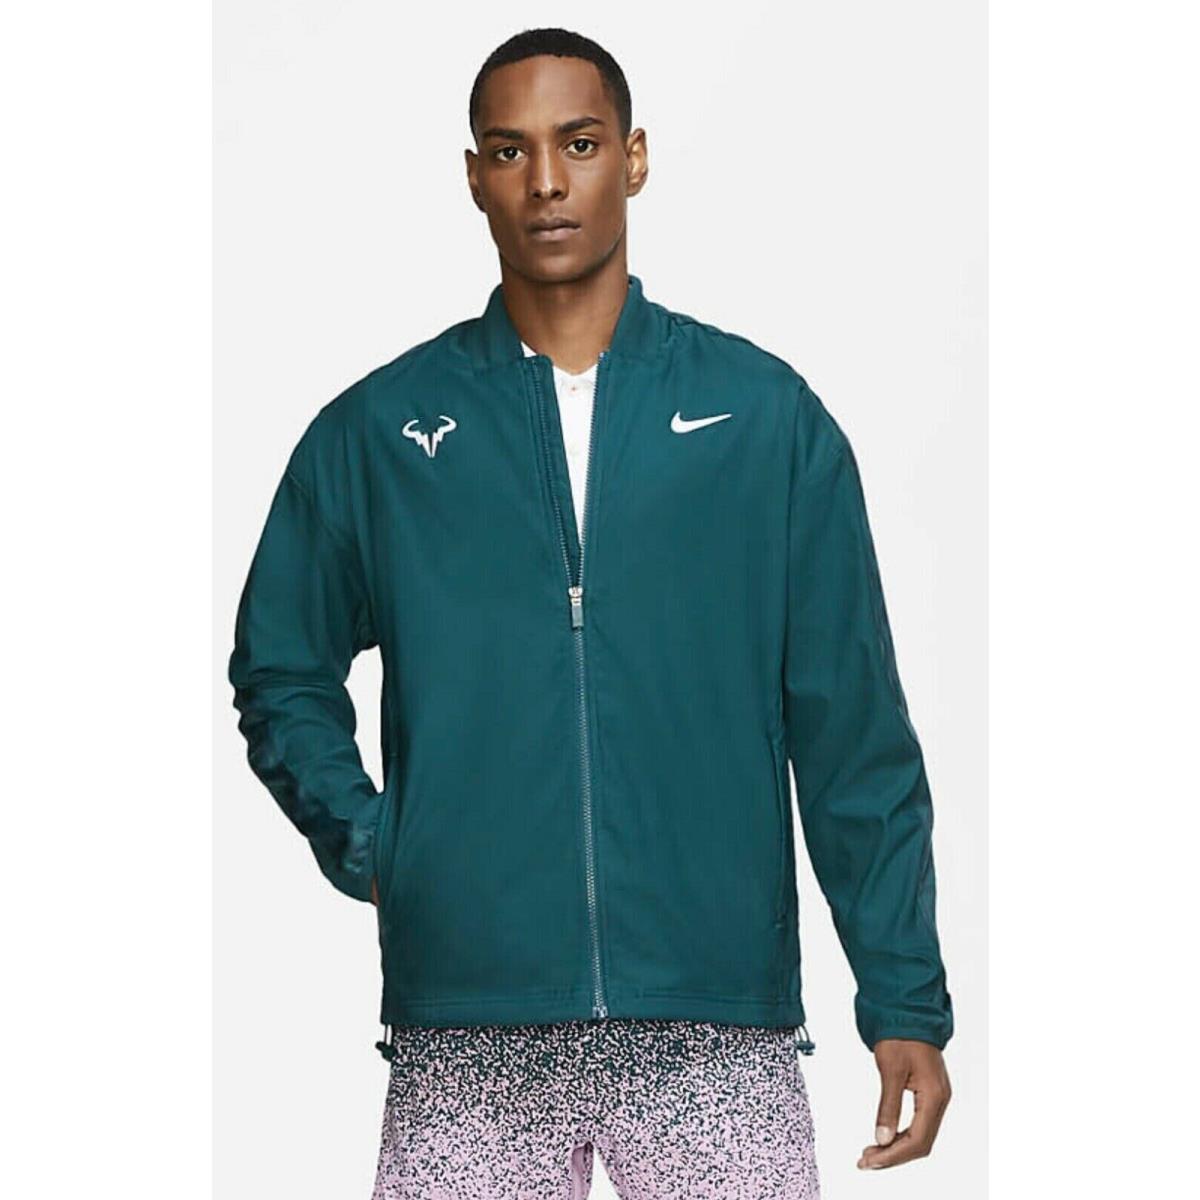 Nike Rafa Court Full-zip Men s Tennis Jacket CI9135-300 Atomic Teal Size Xxl